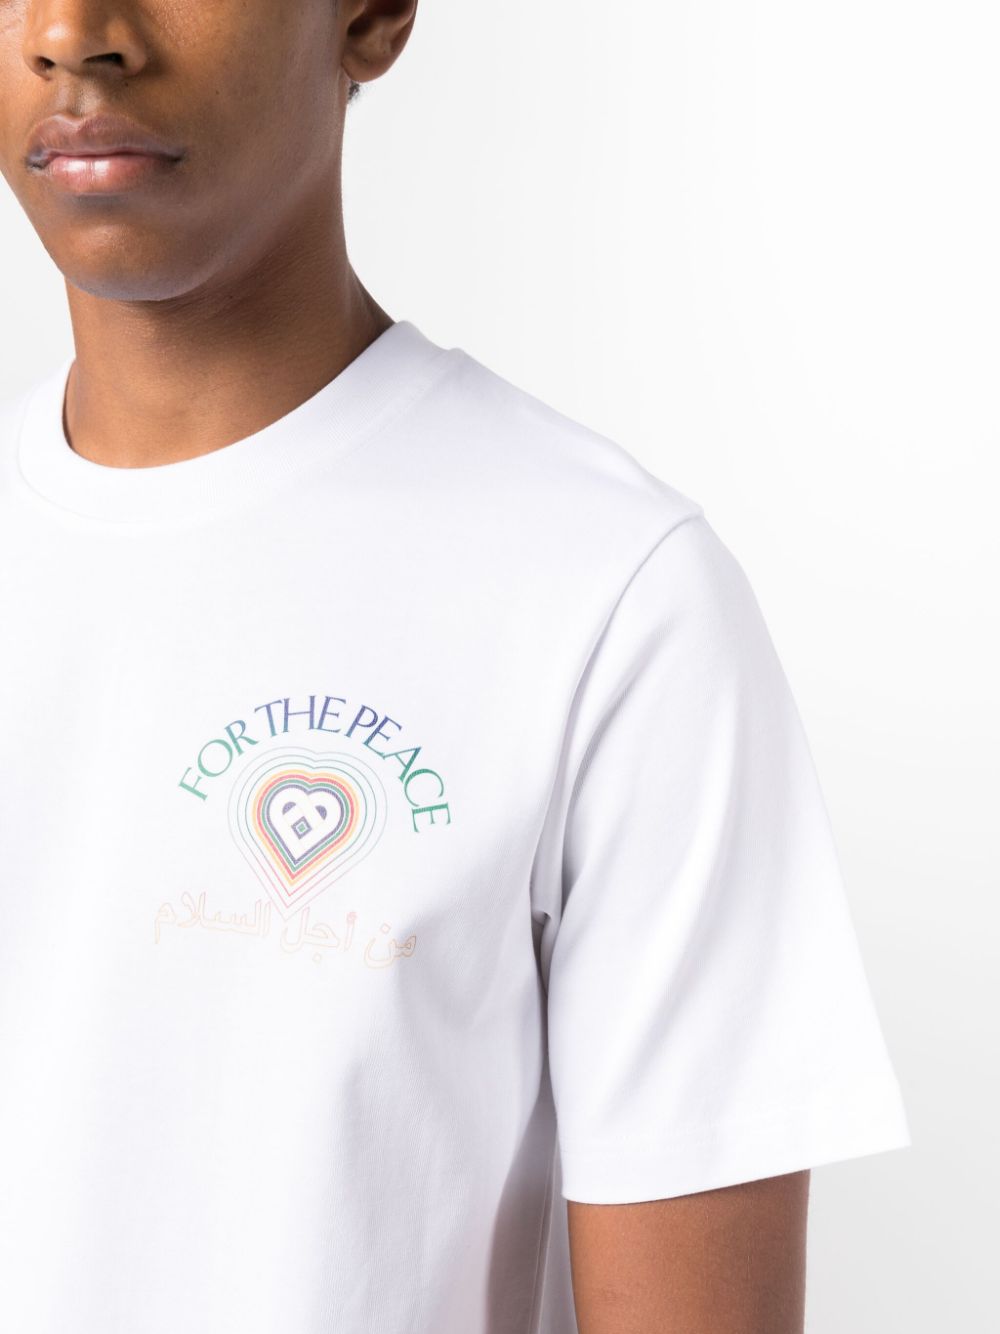 T-shirt in cotone per la Pace